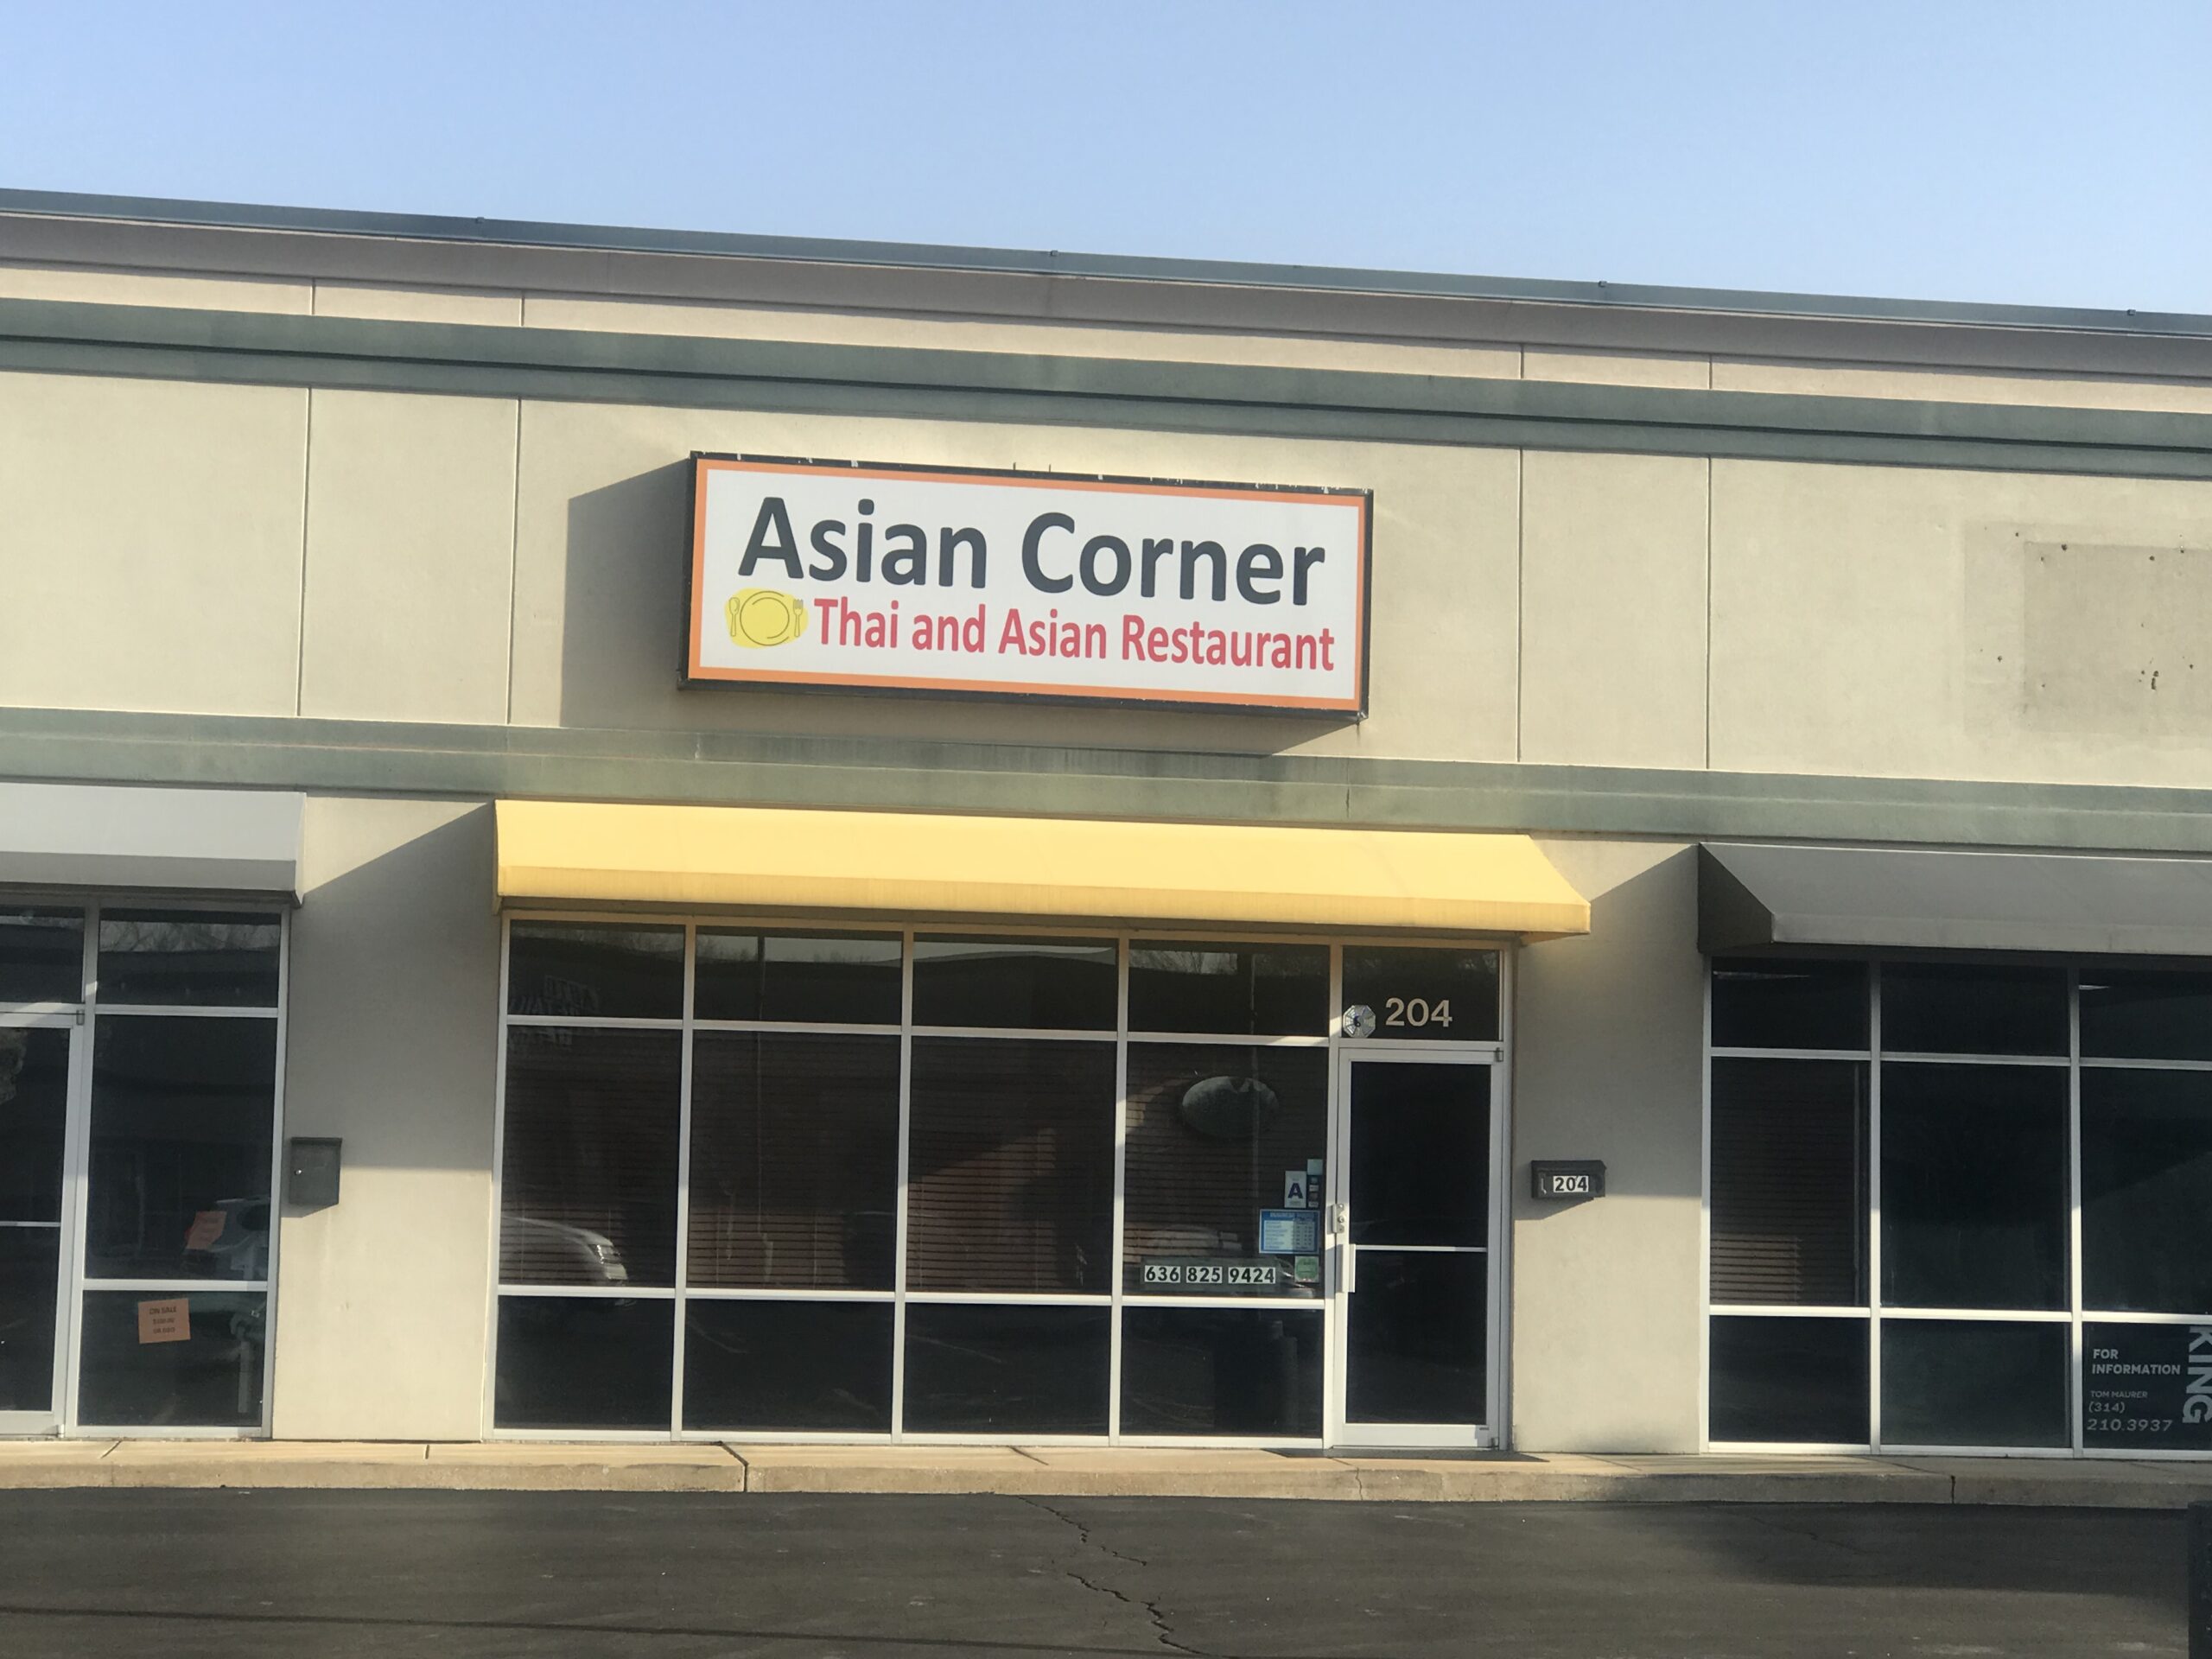 Asian Corner – Increase in Ratings